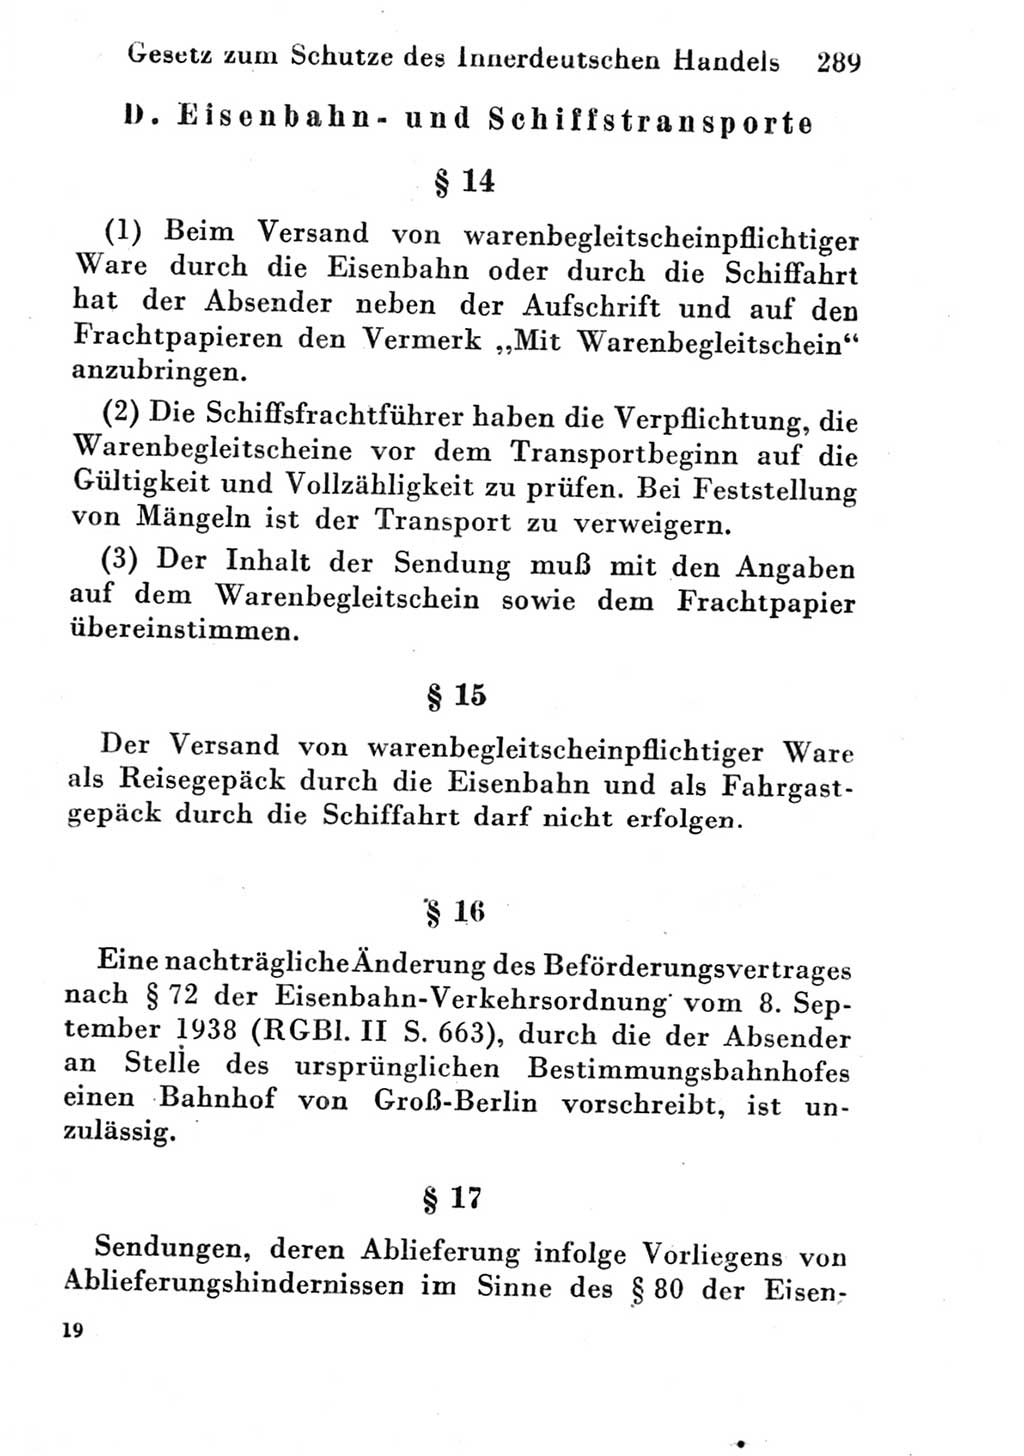 Strafgesetzbuch (StGB) und andere Strafgesetze [Deutsche Demokratische Republik (DDR)] 1951, Seite 289 (StGB Strafges. DDR 1951, S. 289)